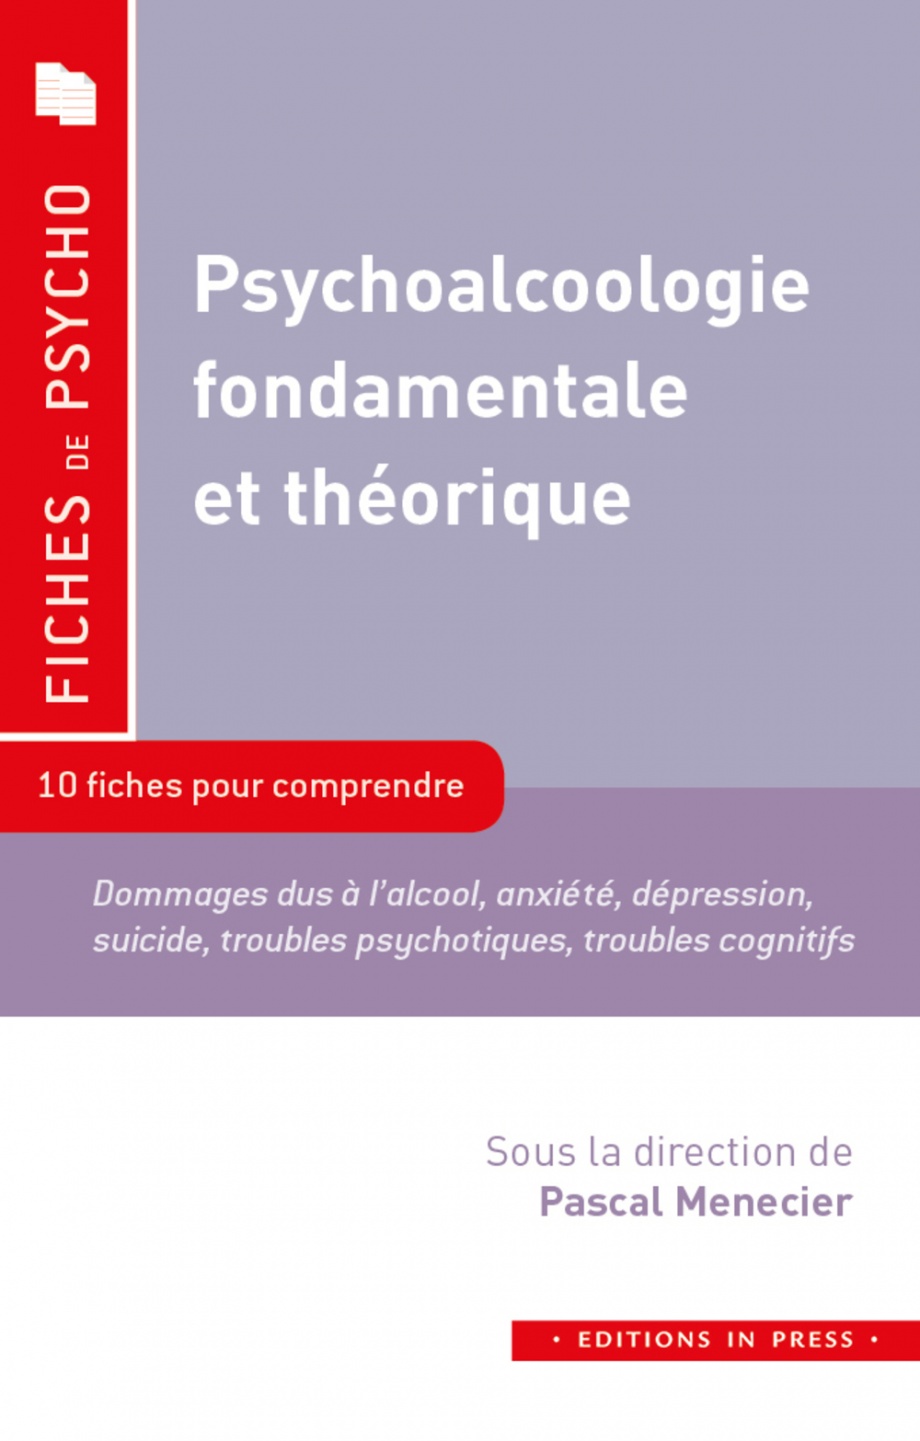 Image Psychoalcoologie fondamentale et théorique